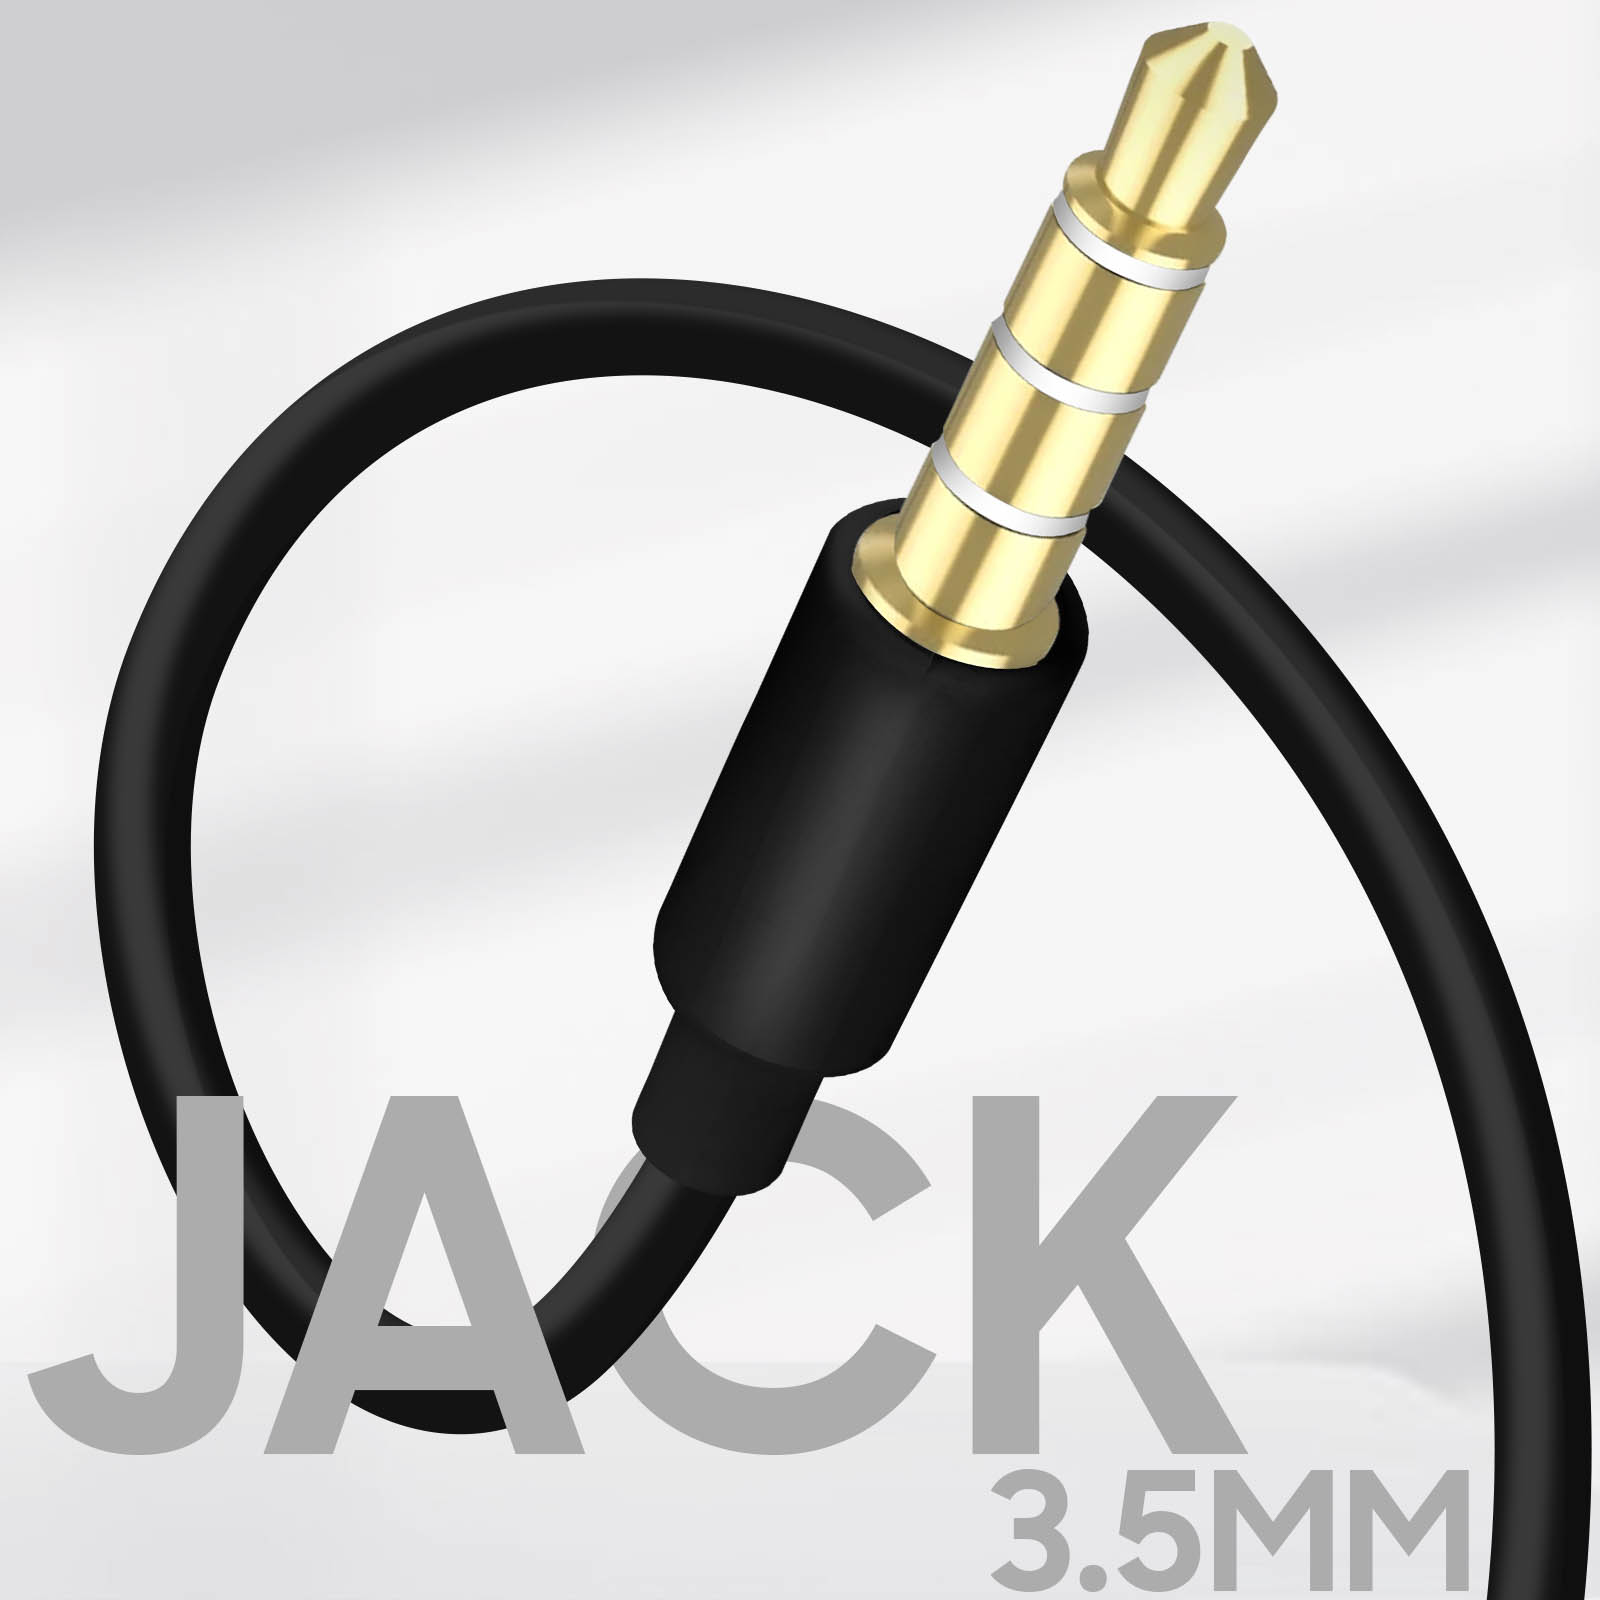 Écouteurs anti-noeuds avec micro et télécommande - prise jack 3.5